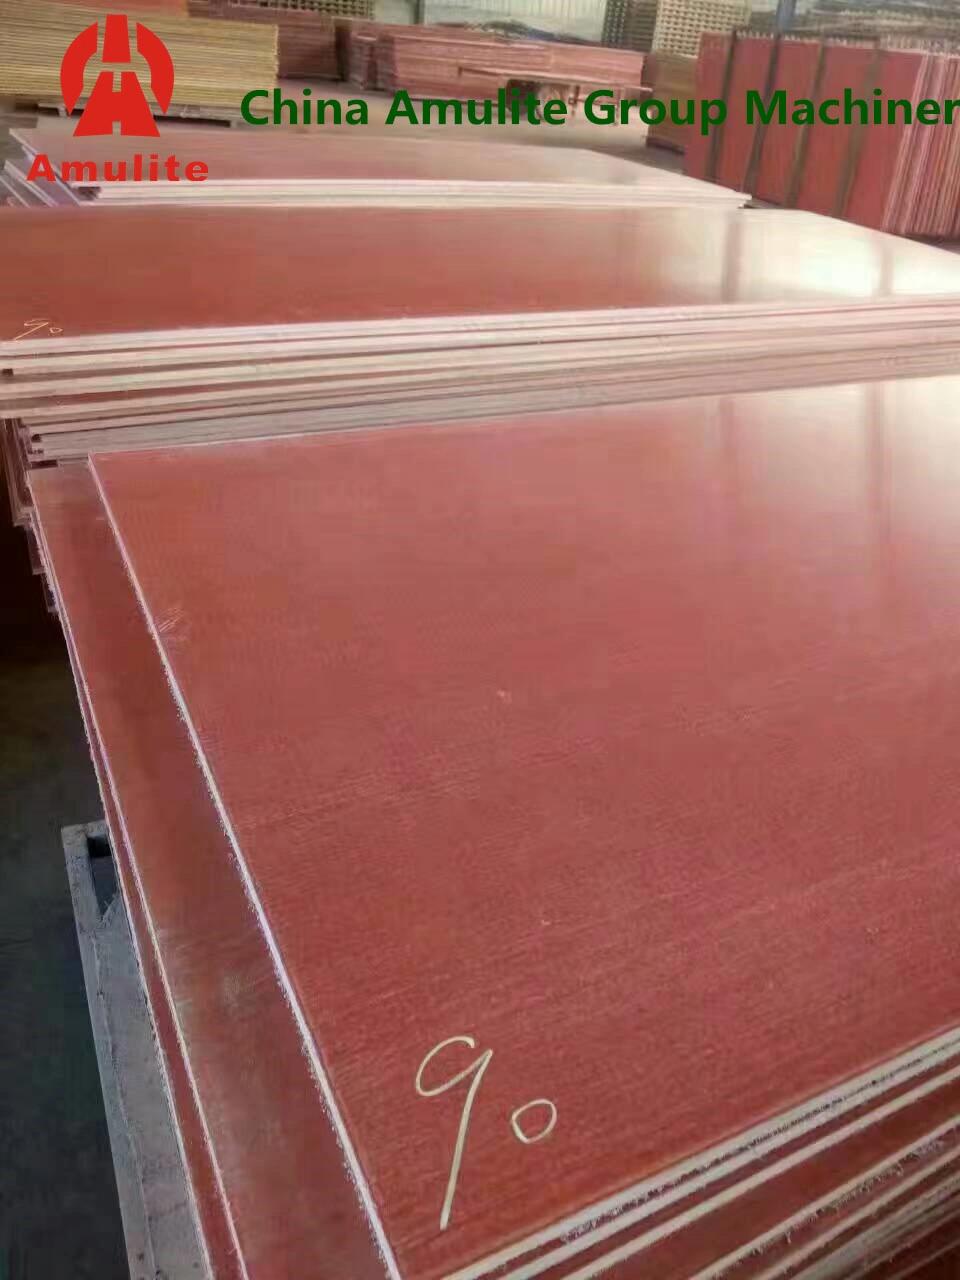 China Amulite Group MGO Sheet Machine